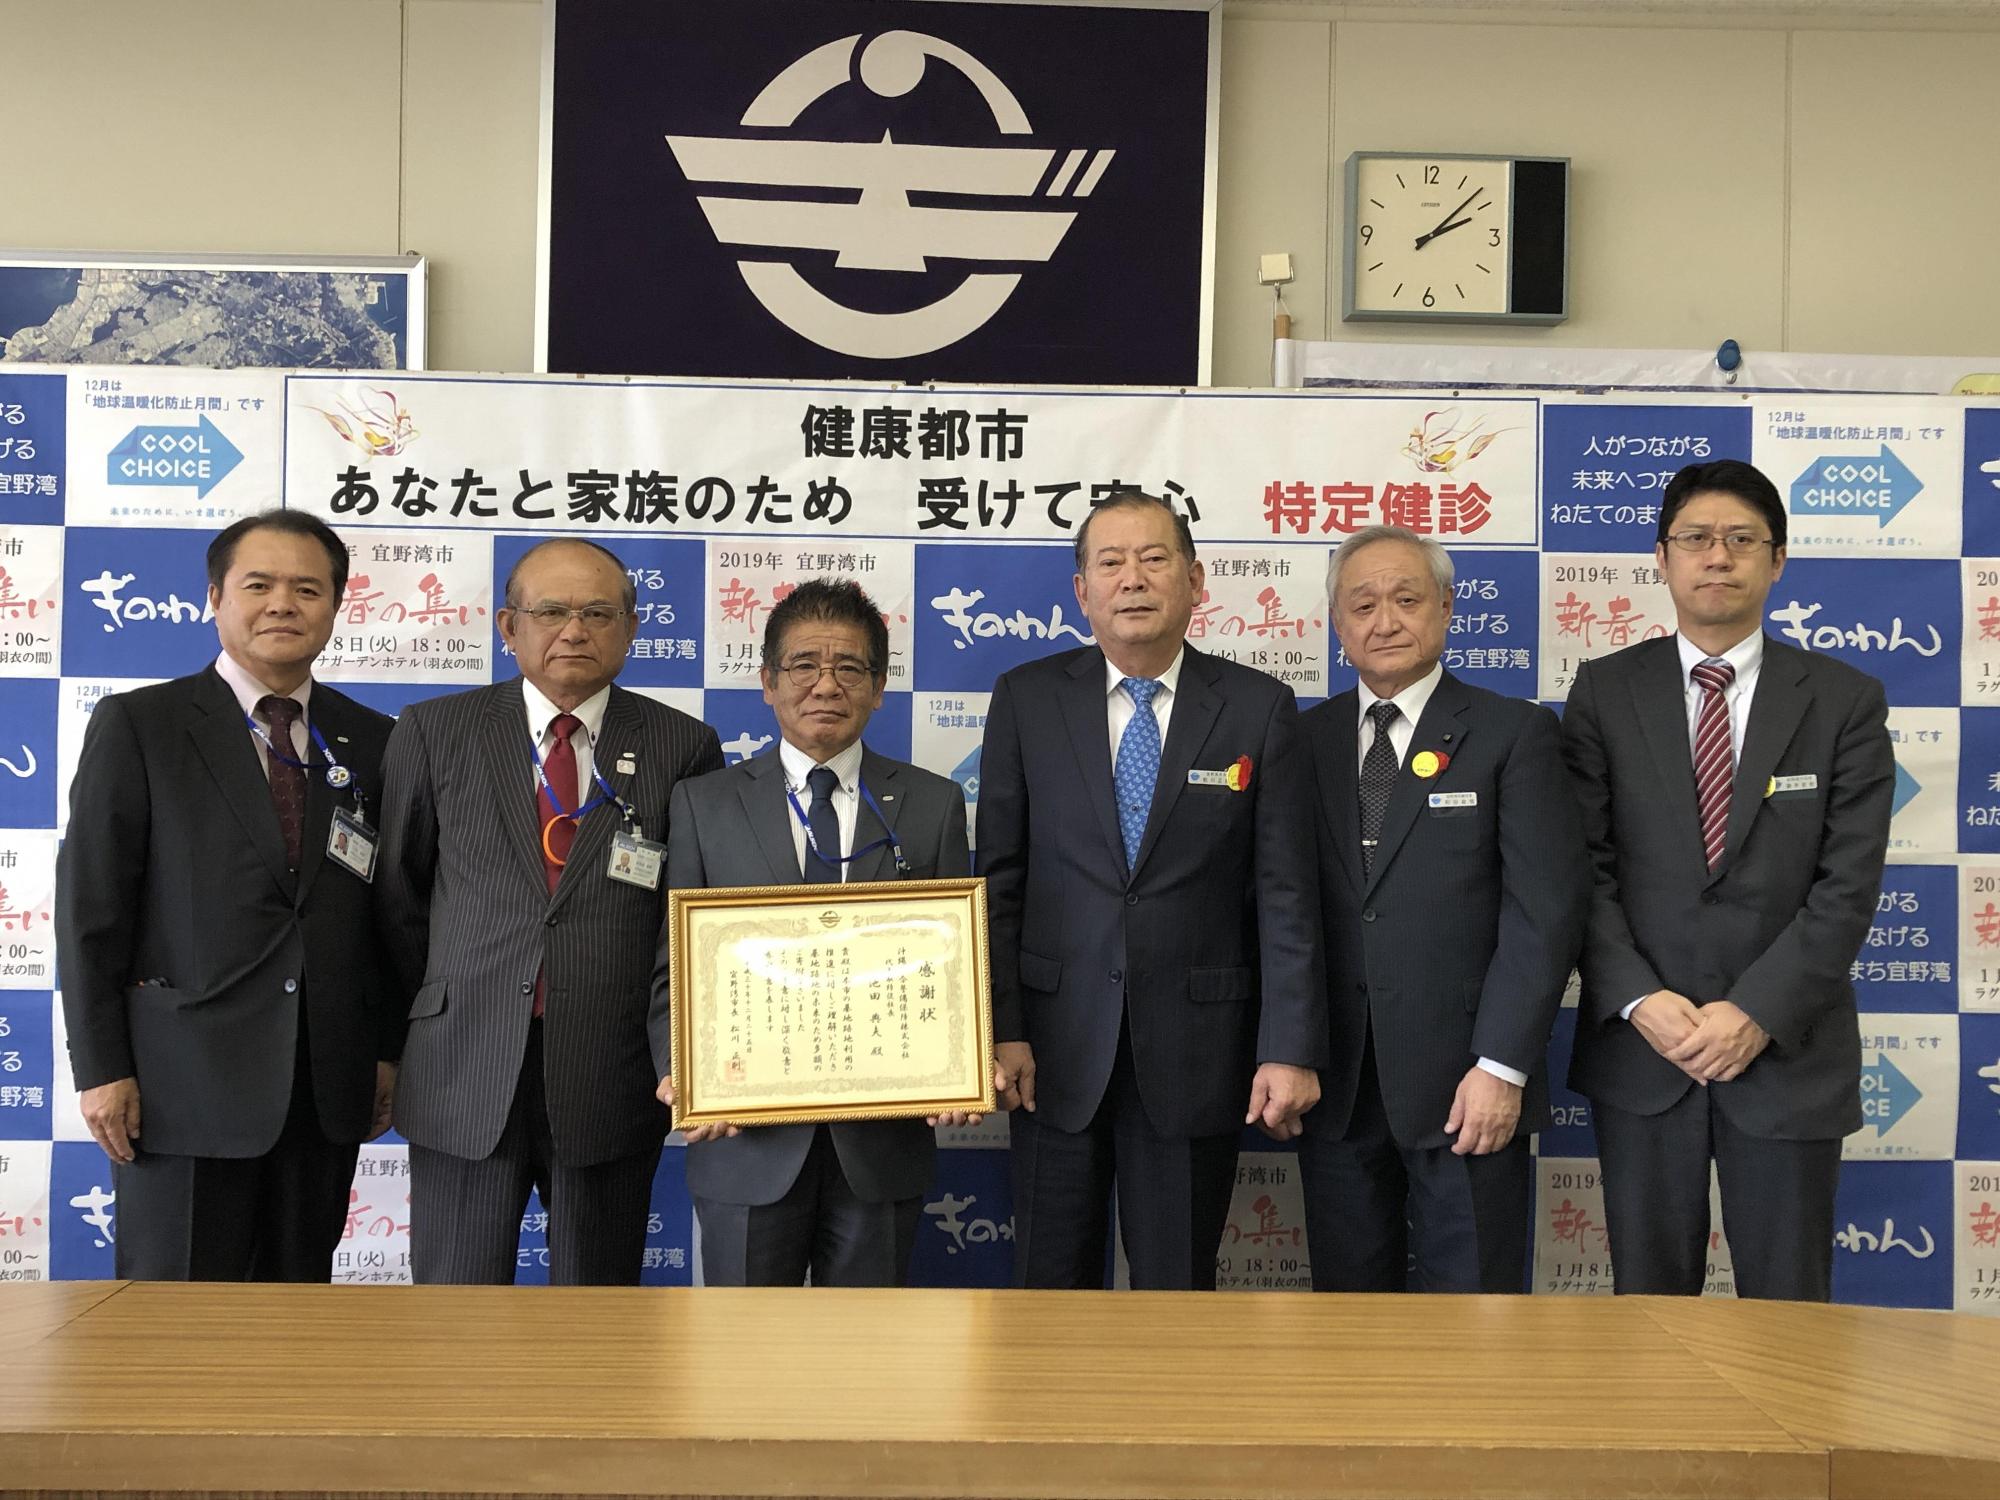 額縁に入った賞状を両手で持っている池田 典夫さんの右隣に松川市長が立ち、二人の両隣に関係者の方々が立っている集合写真